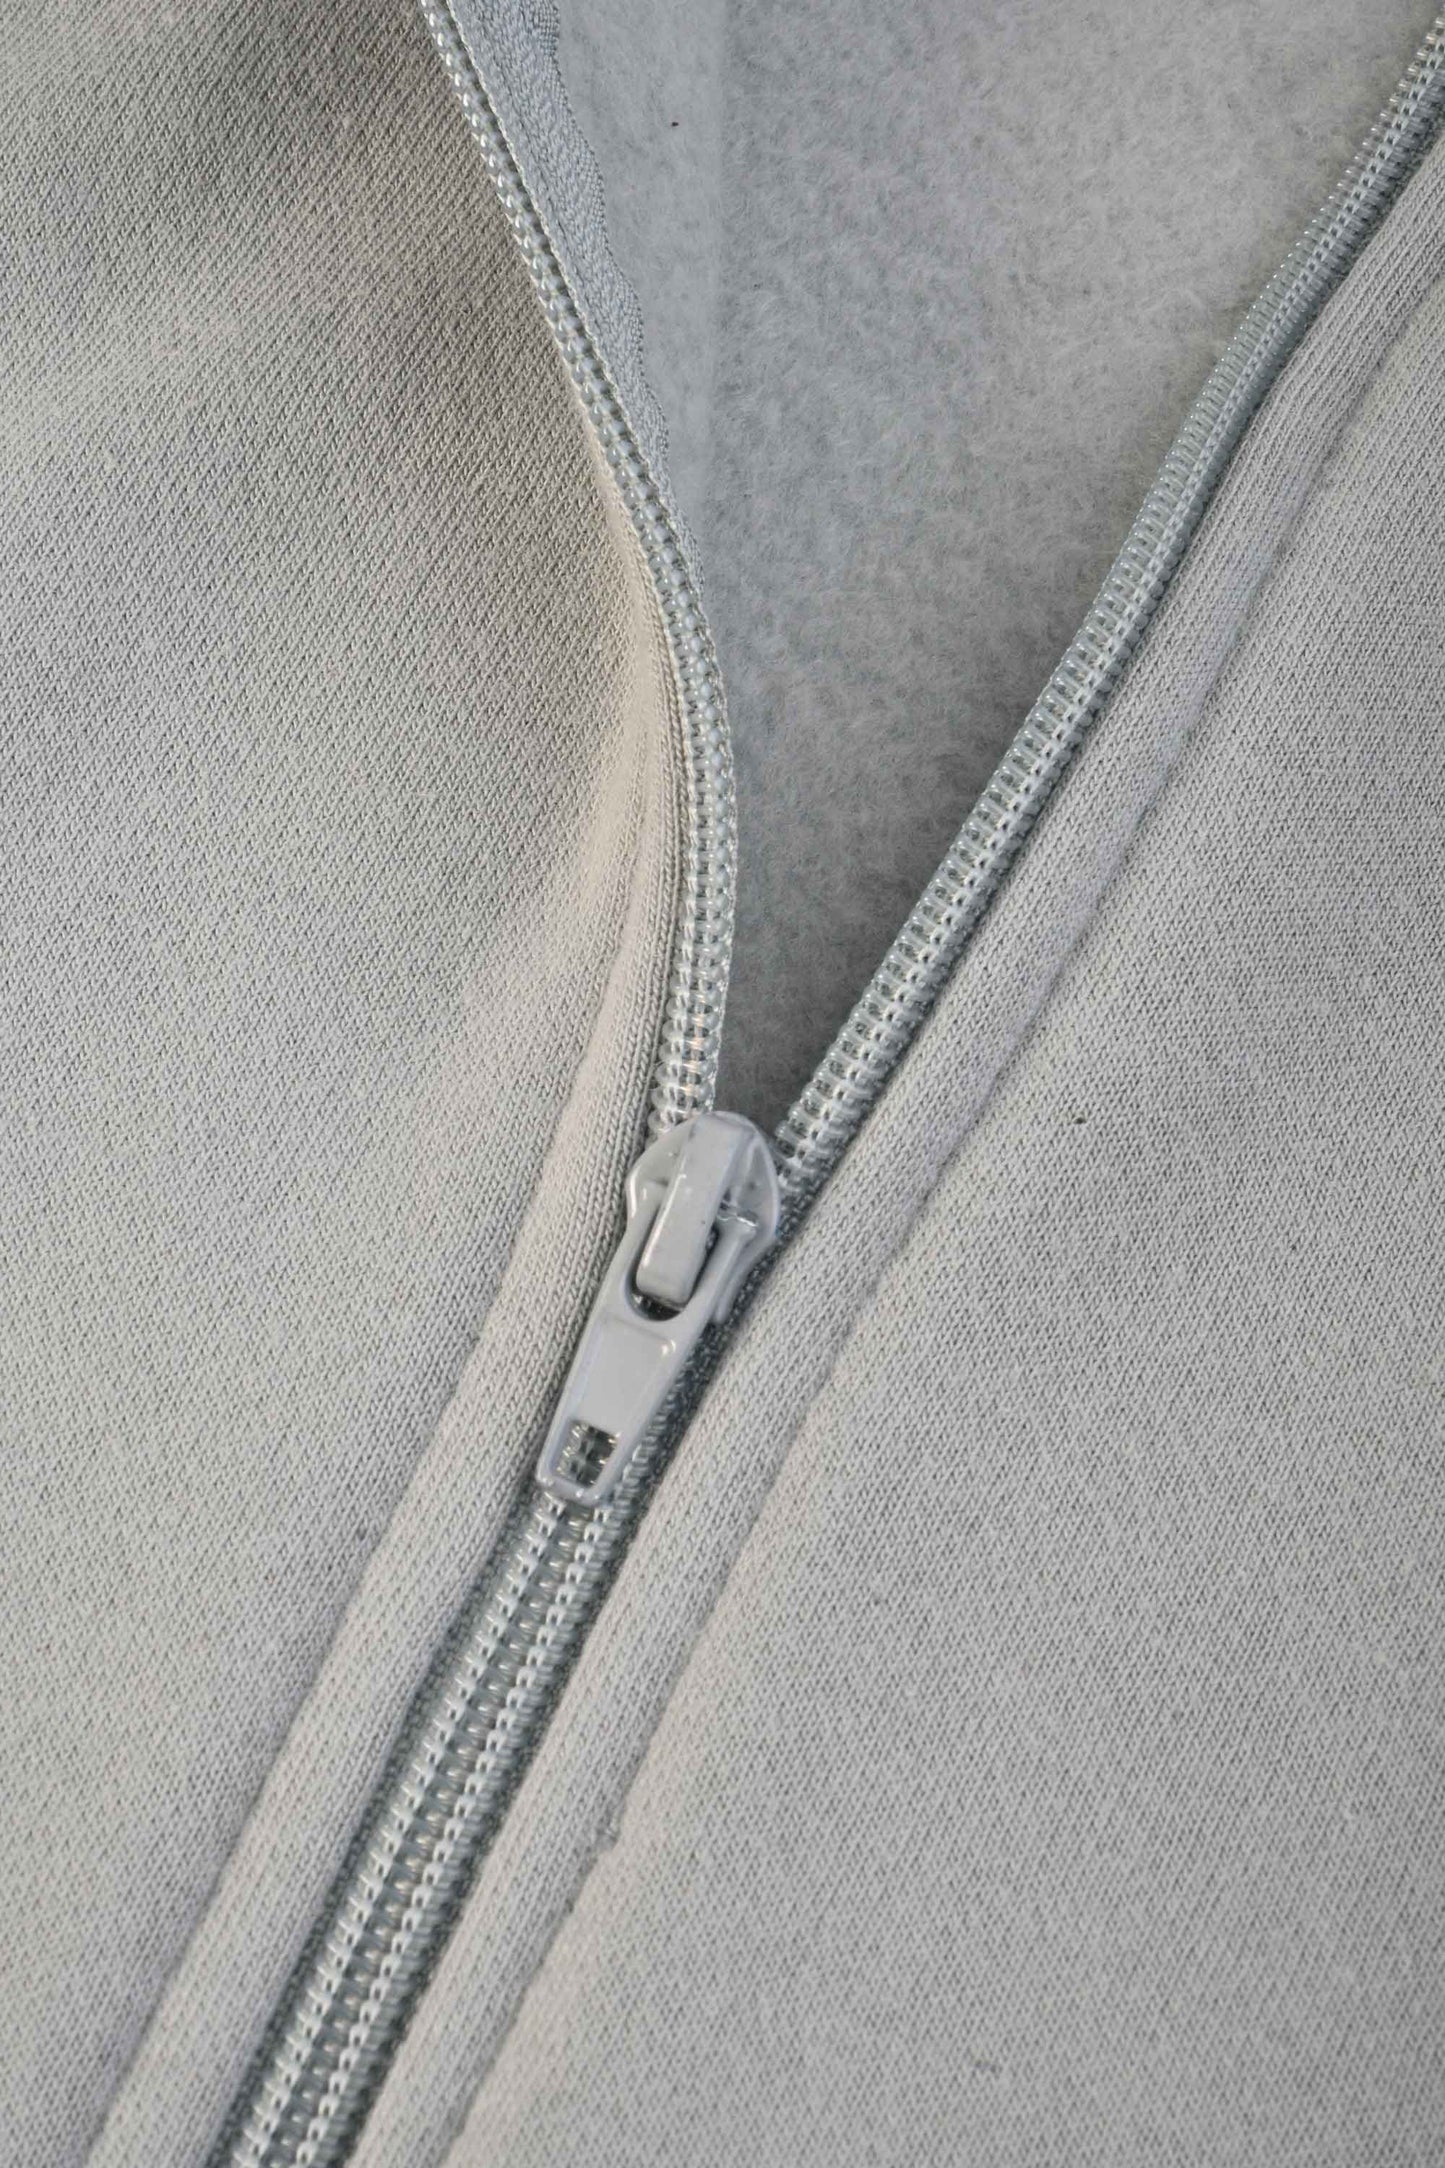 Polo Republica Men's Double Horse Embroidered Fleece Zipper Hooded Jacket Men's Jacket Polo Republica 